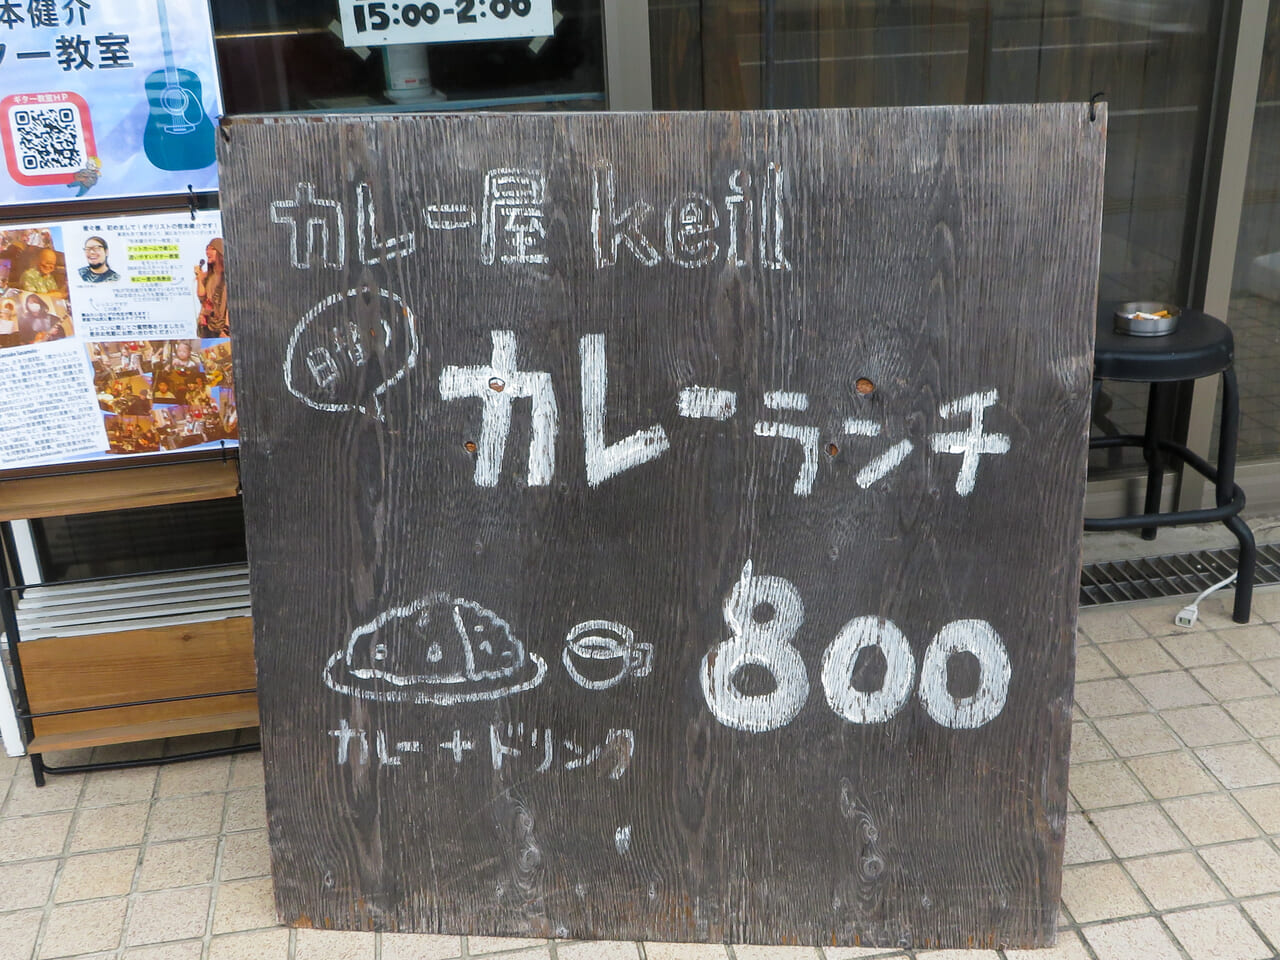 ビリヤード場のカレー屋さん「Curry&cafe keil（ケイル）」が来春、横浜に移転。平塚の店舗は年内で閉店します。